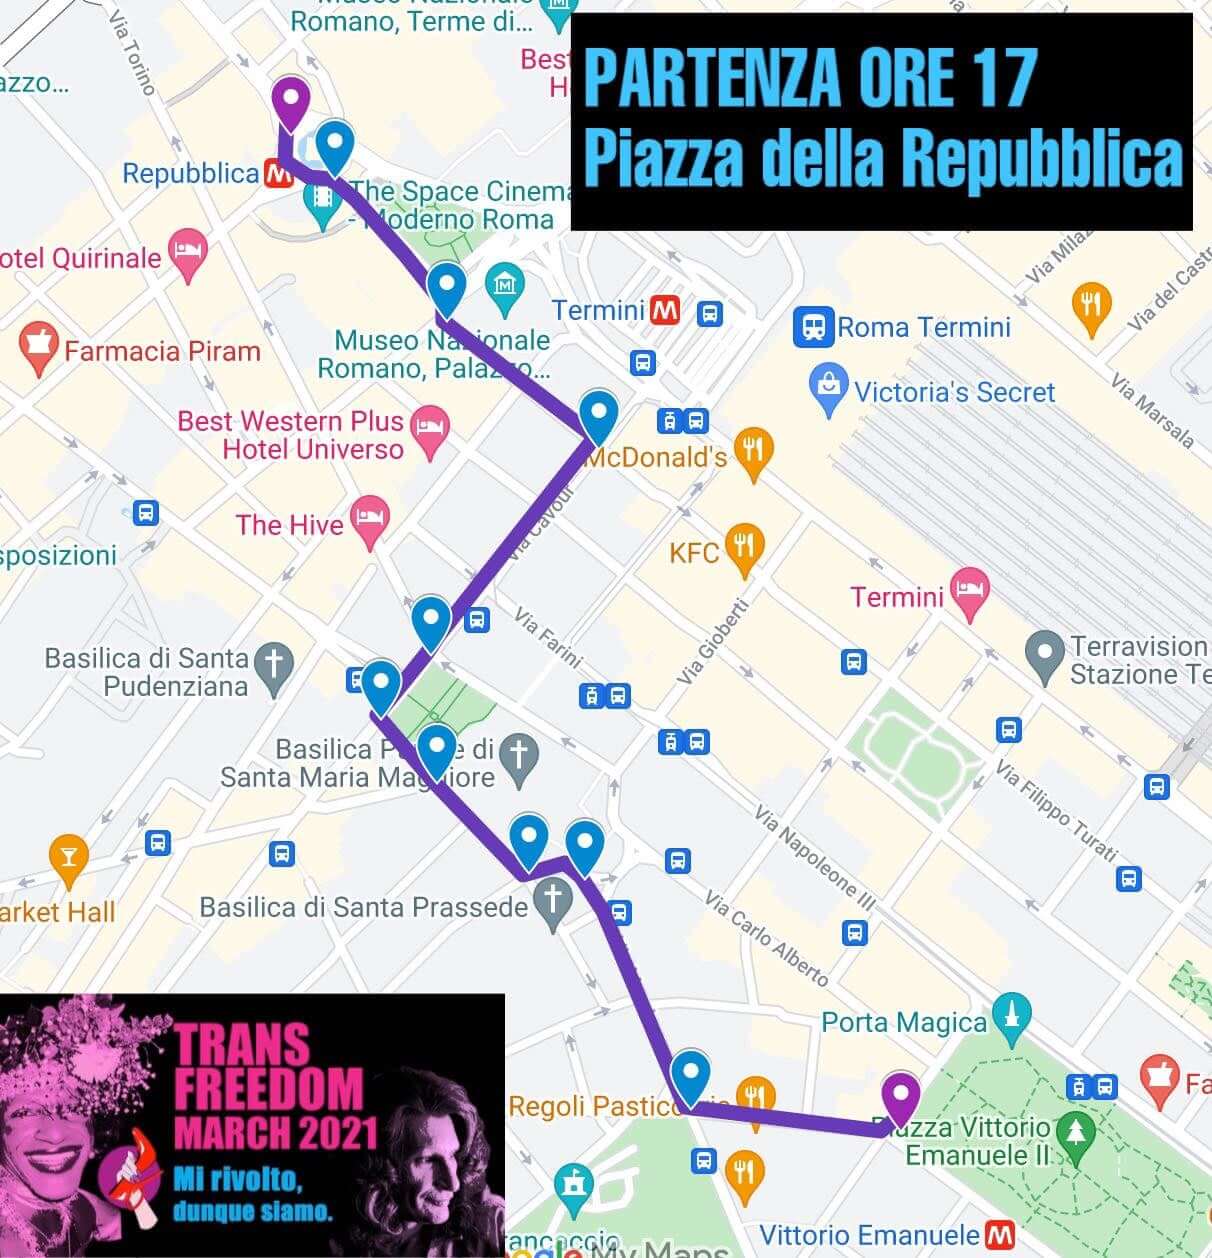 TDoR 2021, Trans Freedom March sabato 20 novembre a Roma. Il percorso - trans march - Gay.it